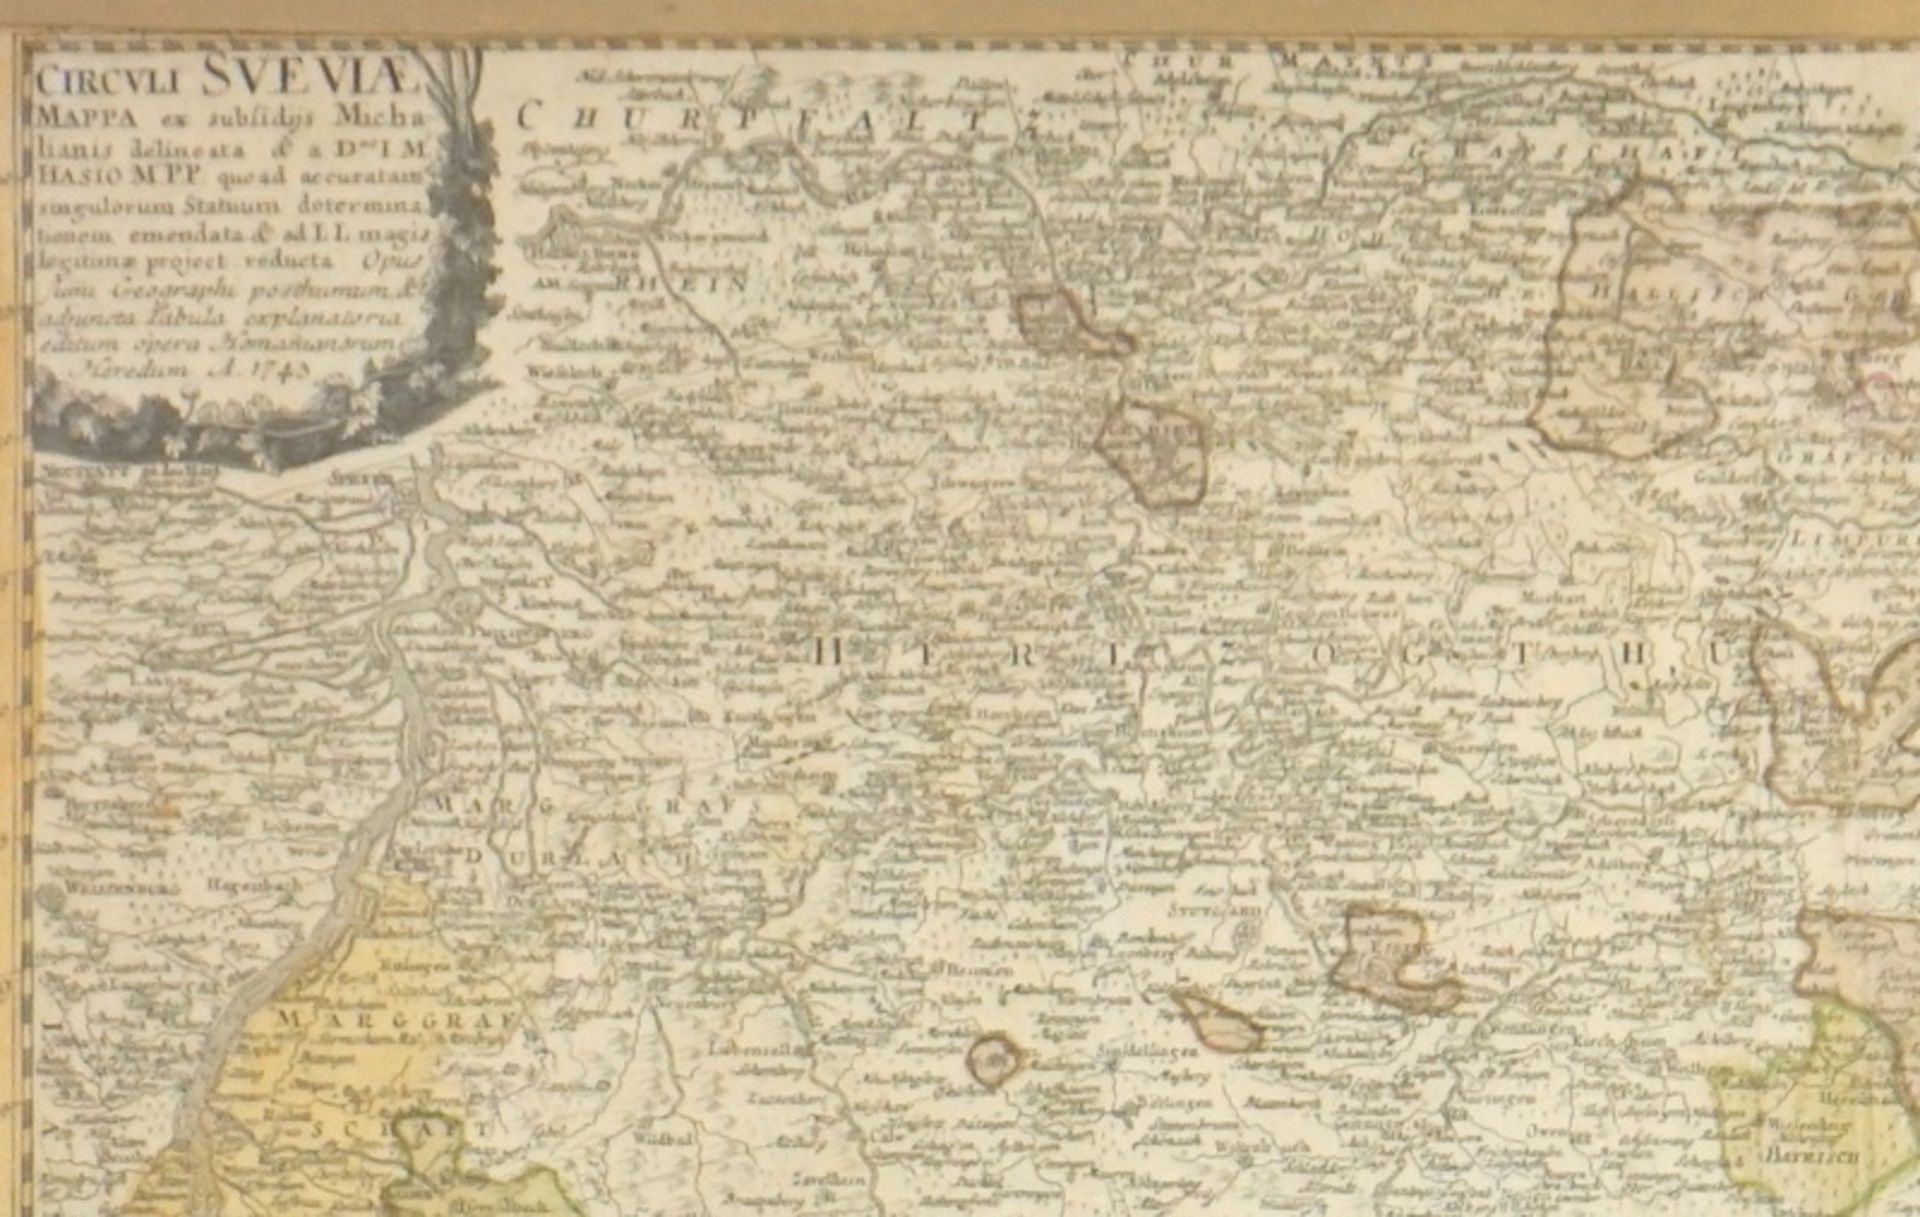 Baden Würthenberg 1743 Circuli Sveviae Mappa ex subsidijs Michali. - Bild 2 aus 2